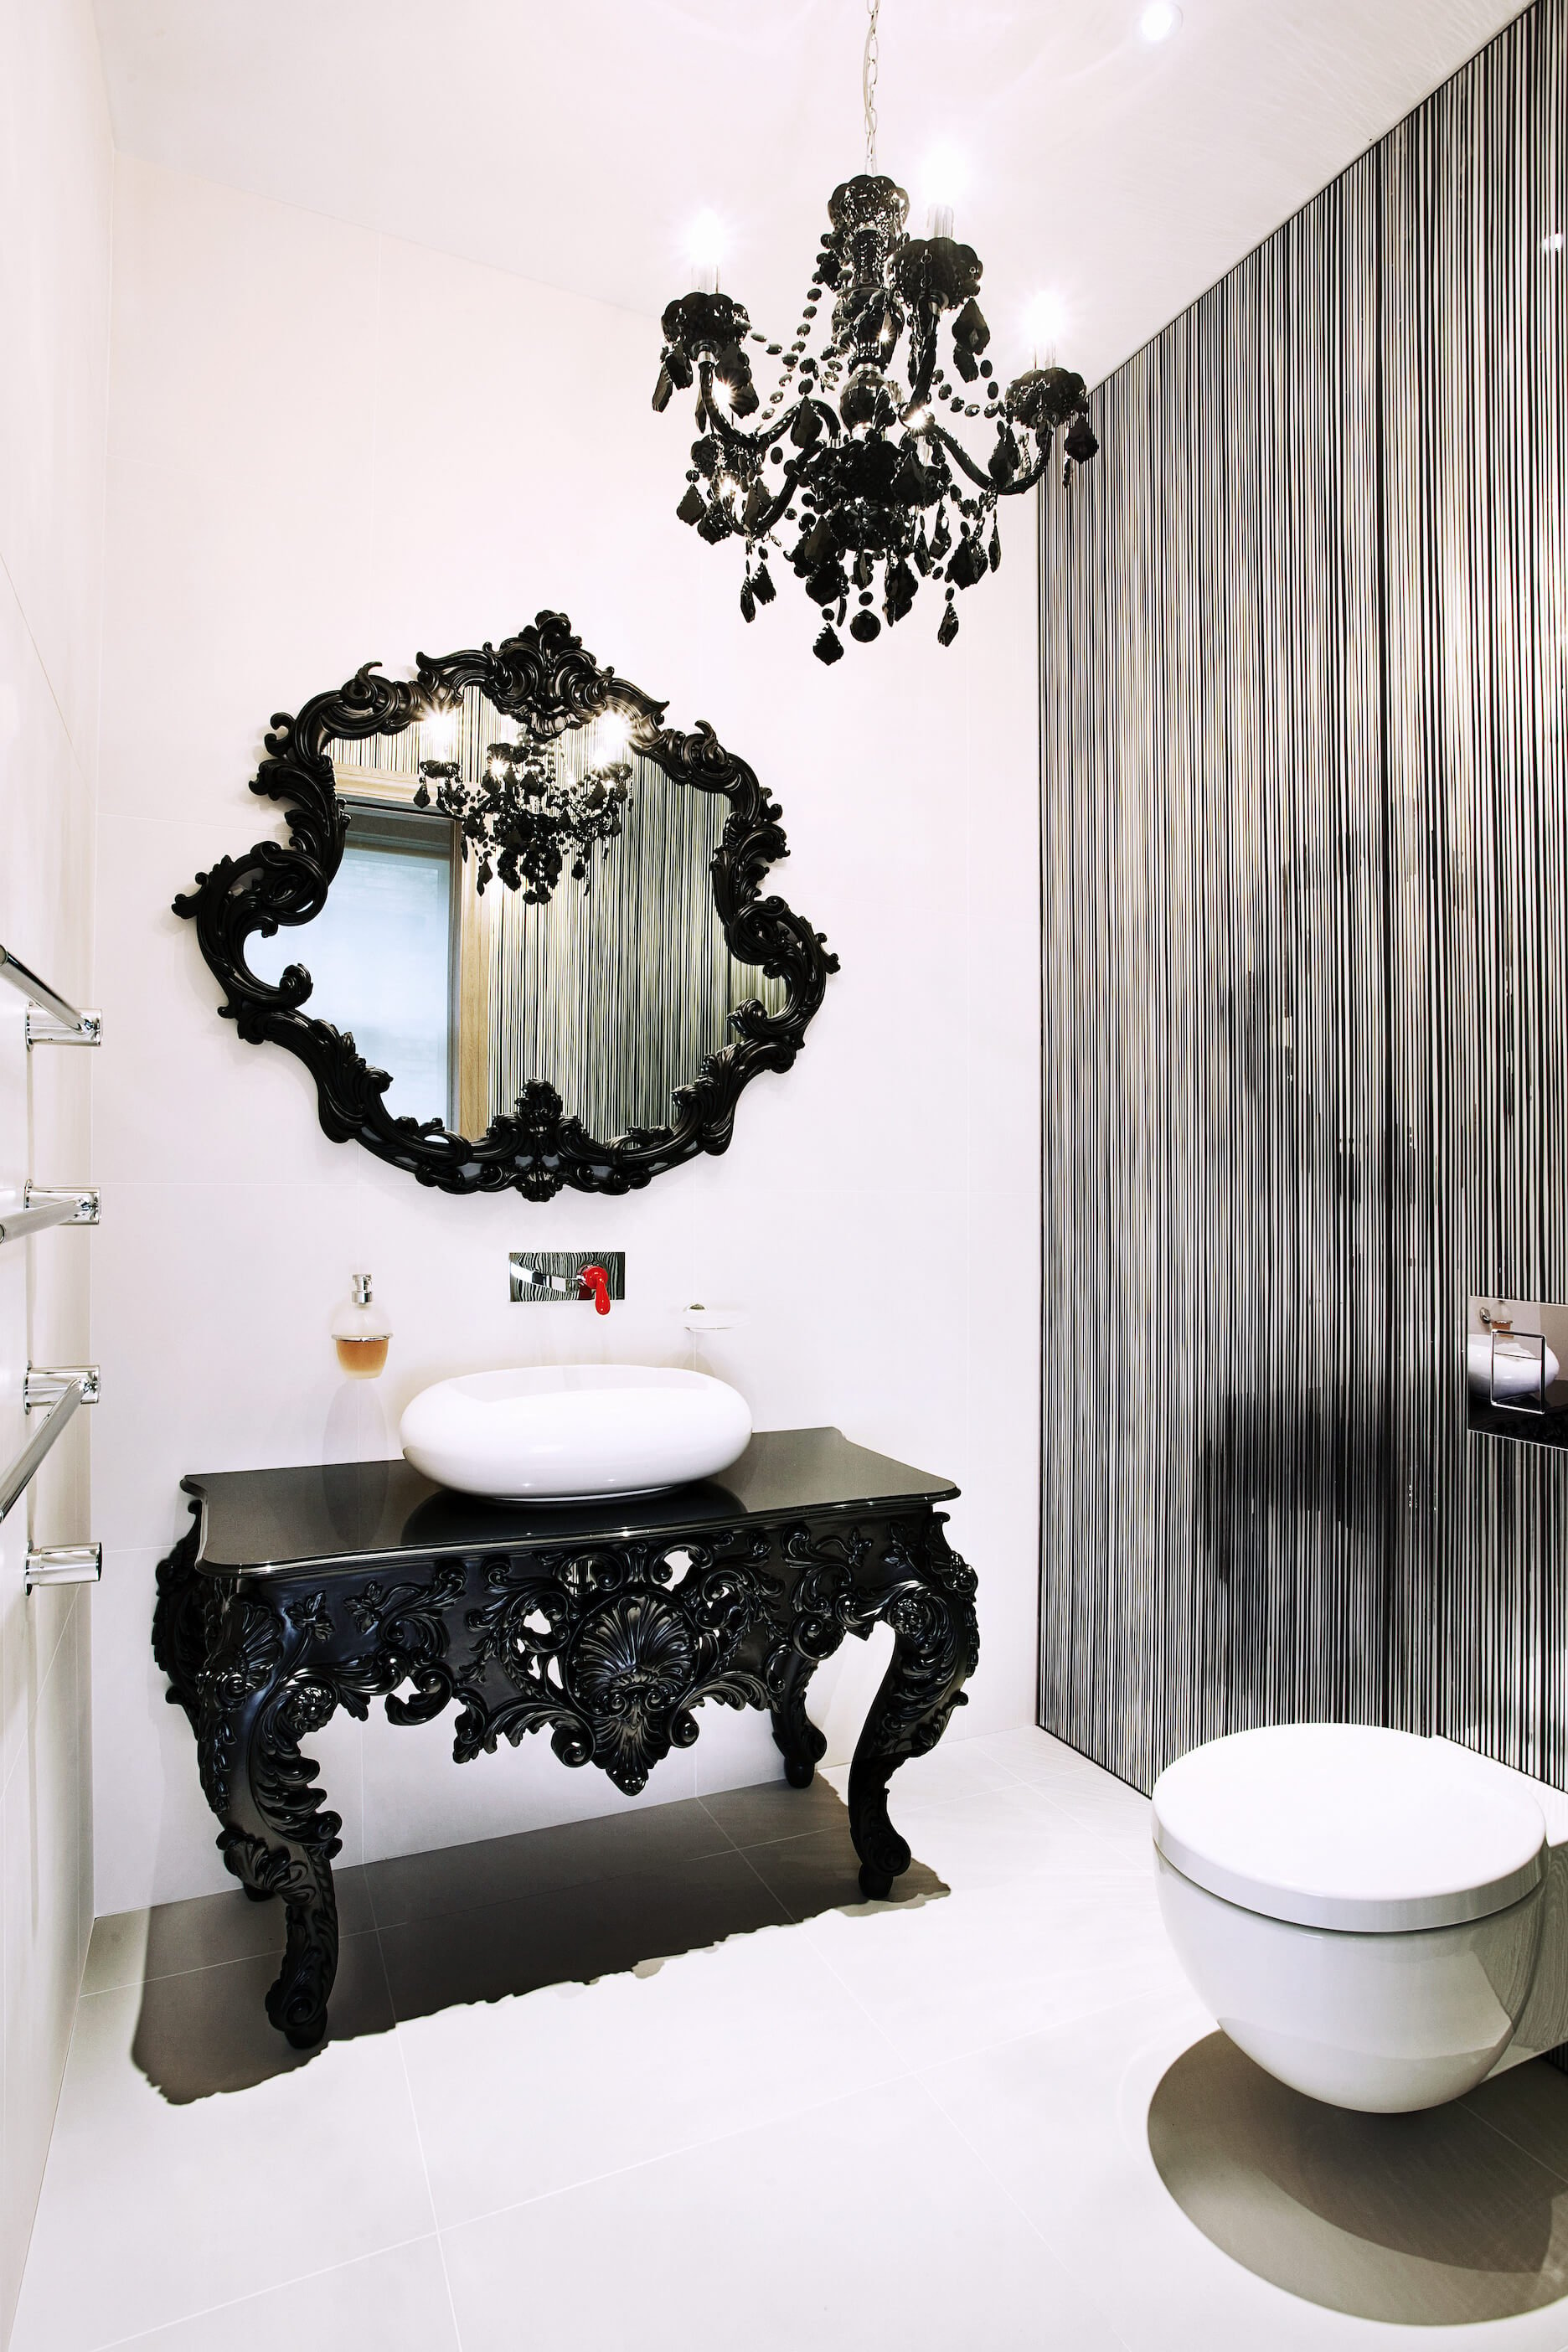 最后，我们有另一个完全不同的浴室。这个例子是一个华丽的，传统风格的黑色梳妆台和白色的容器水槽，下面是一个互补的黑色镜框镜子。银色竖条纹墙与白色瓷砖形成鲜明对比。